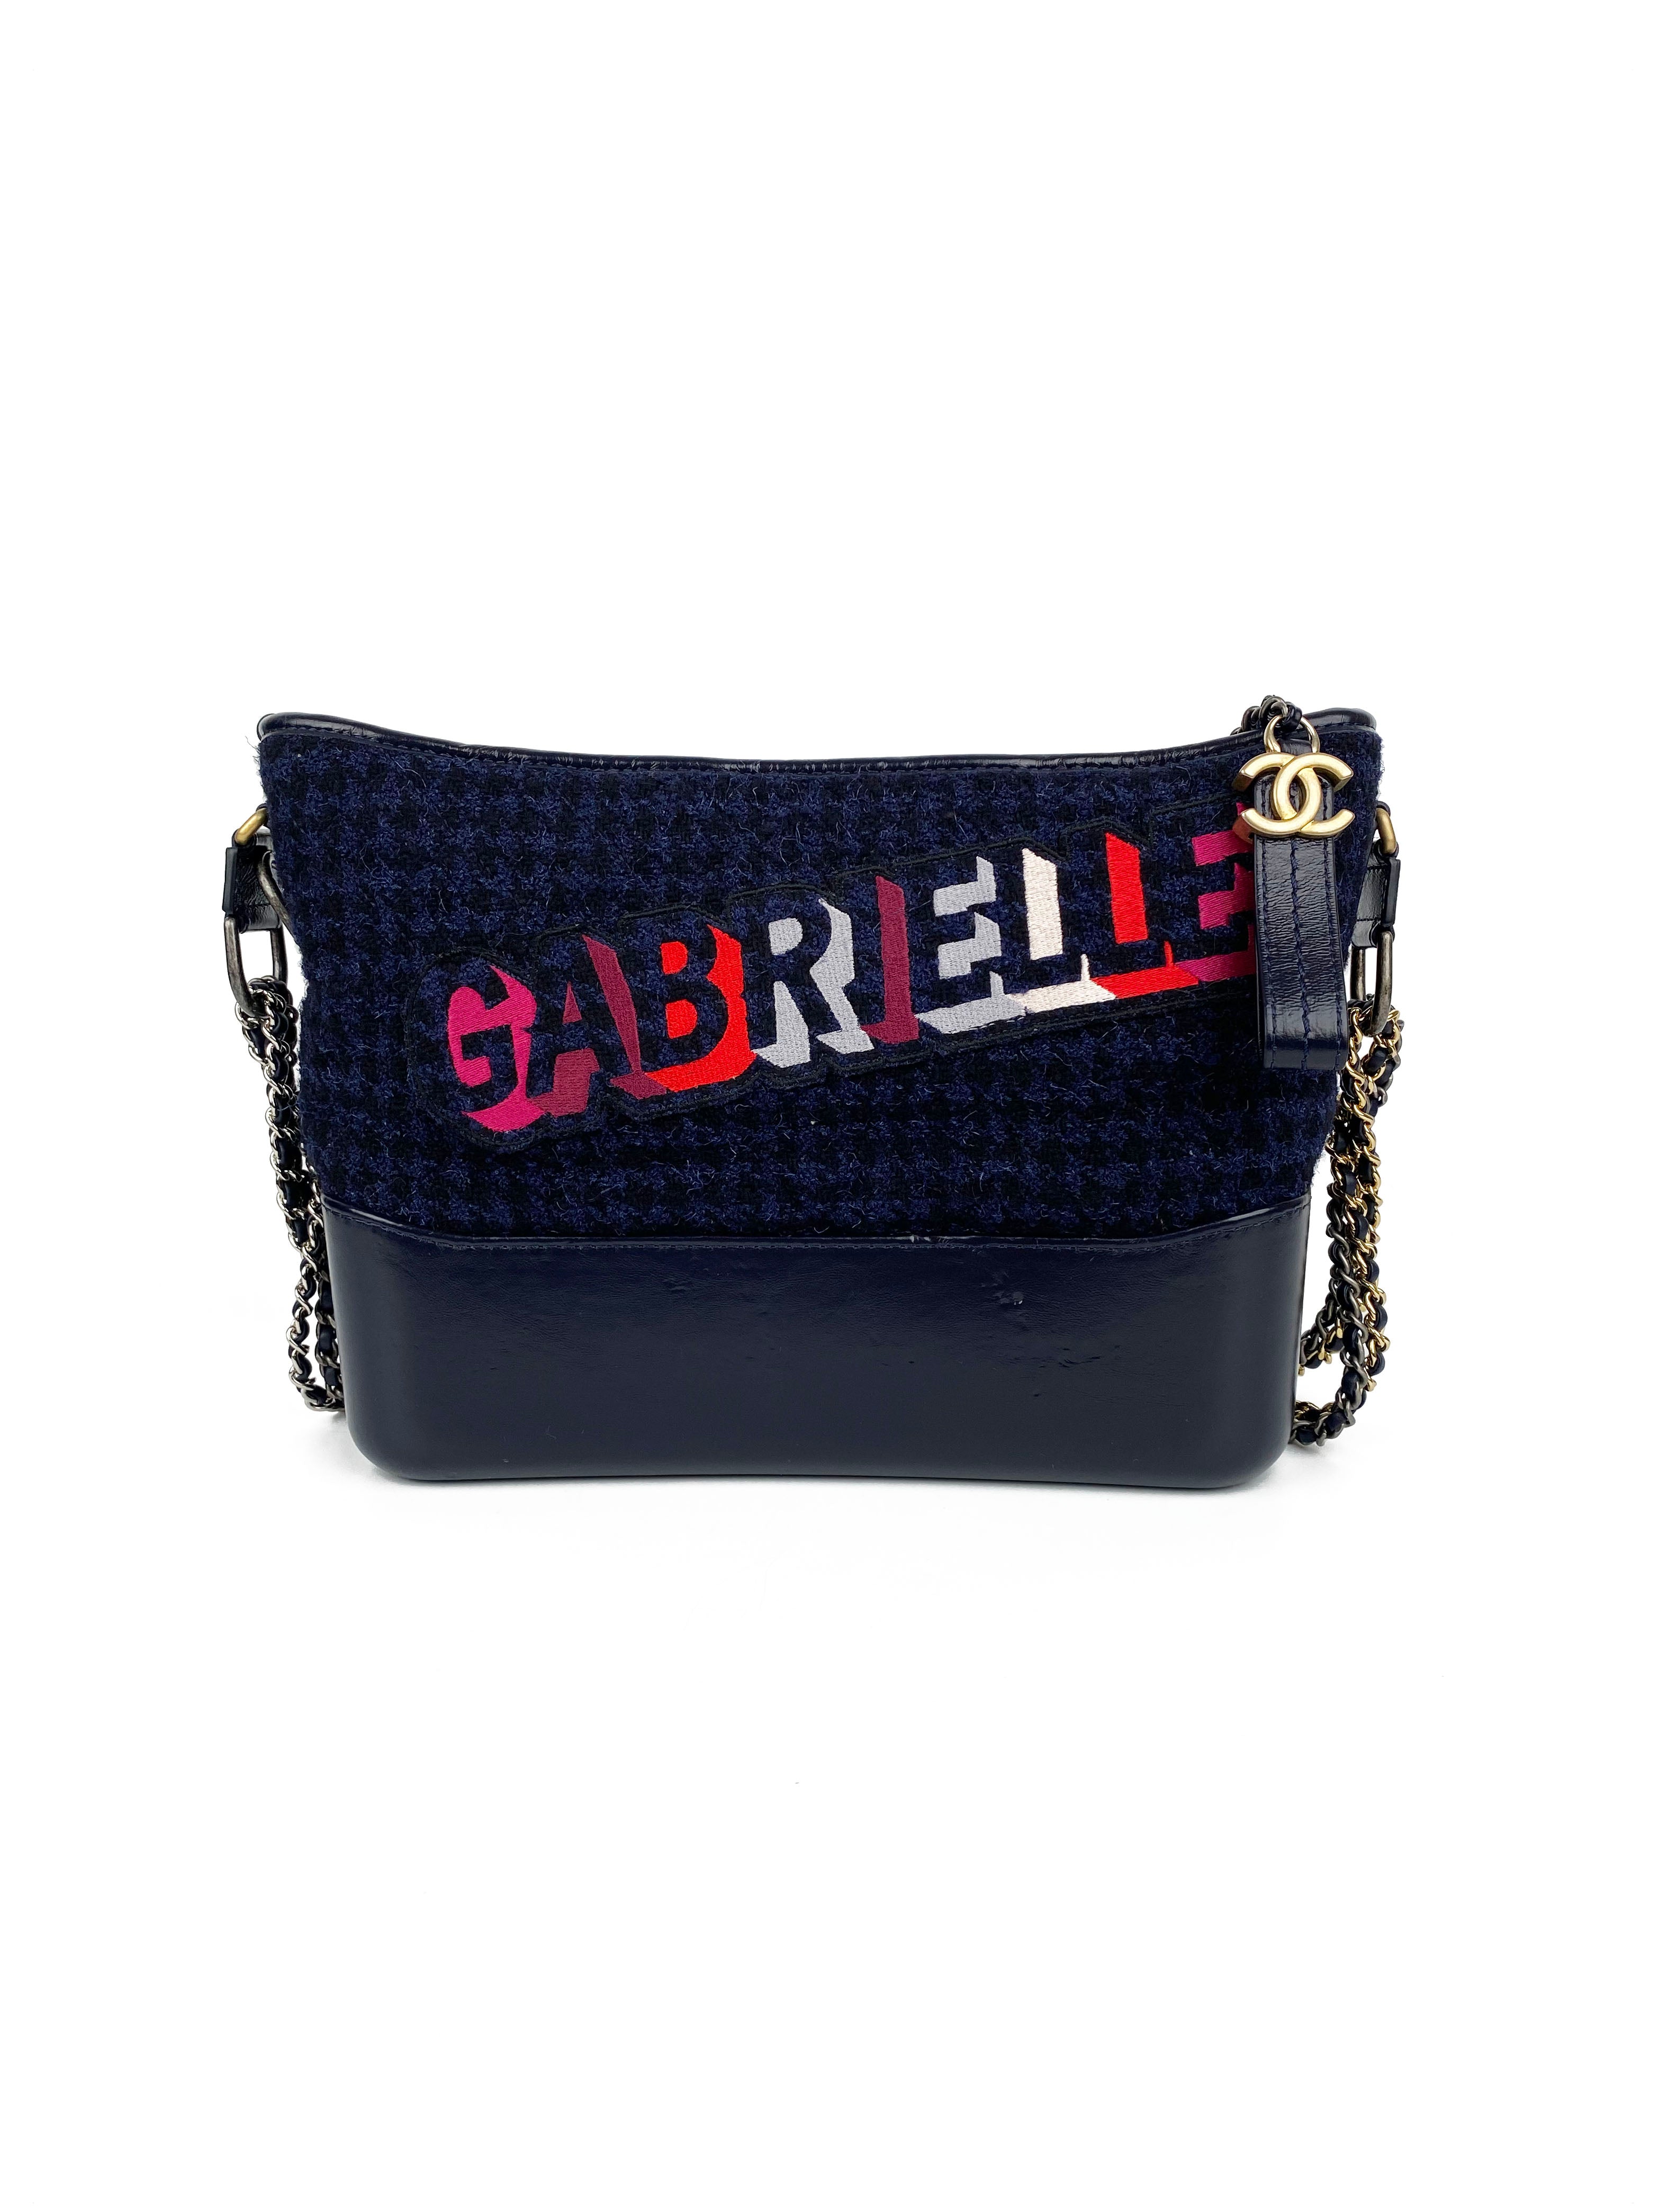 Chanel Navy Tweed Gabrielle Bag - AGL2125